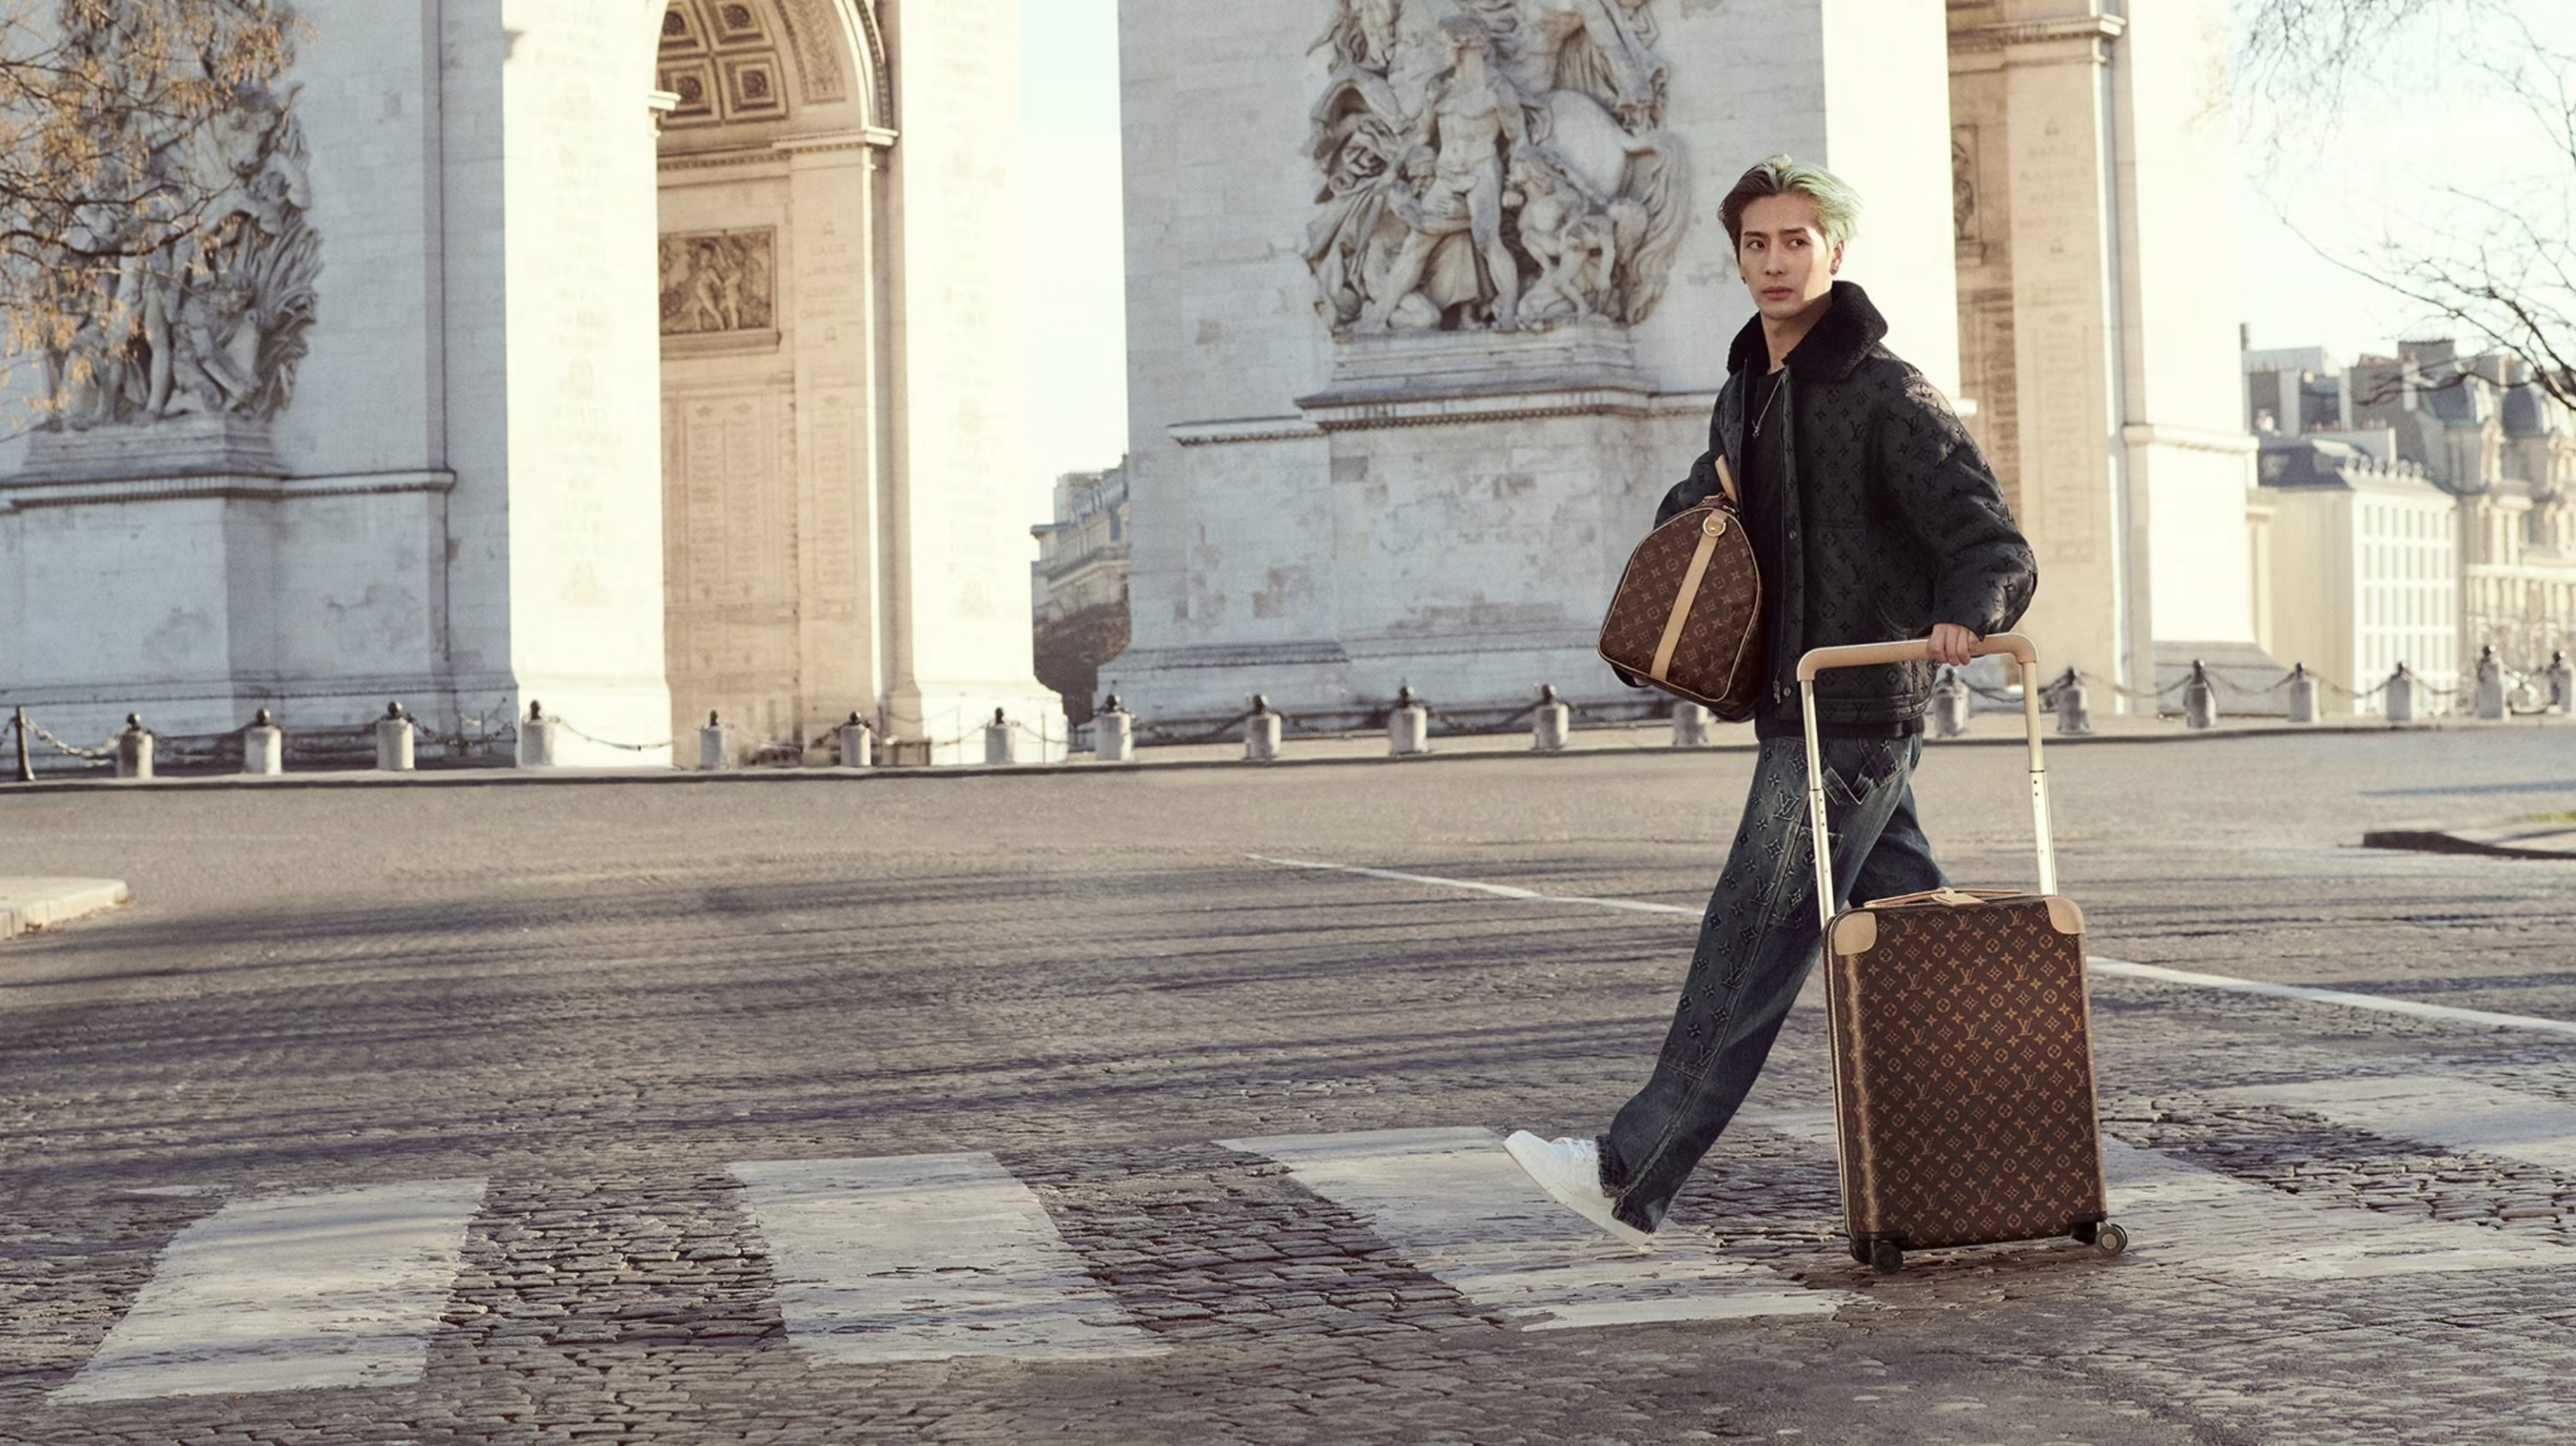 Louis Vuitton Carryall Bag Campaign (Louis Vuitton)